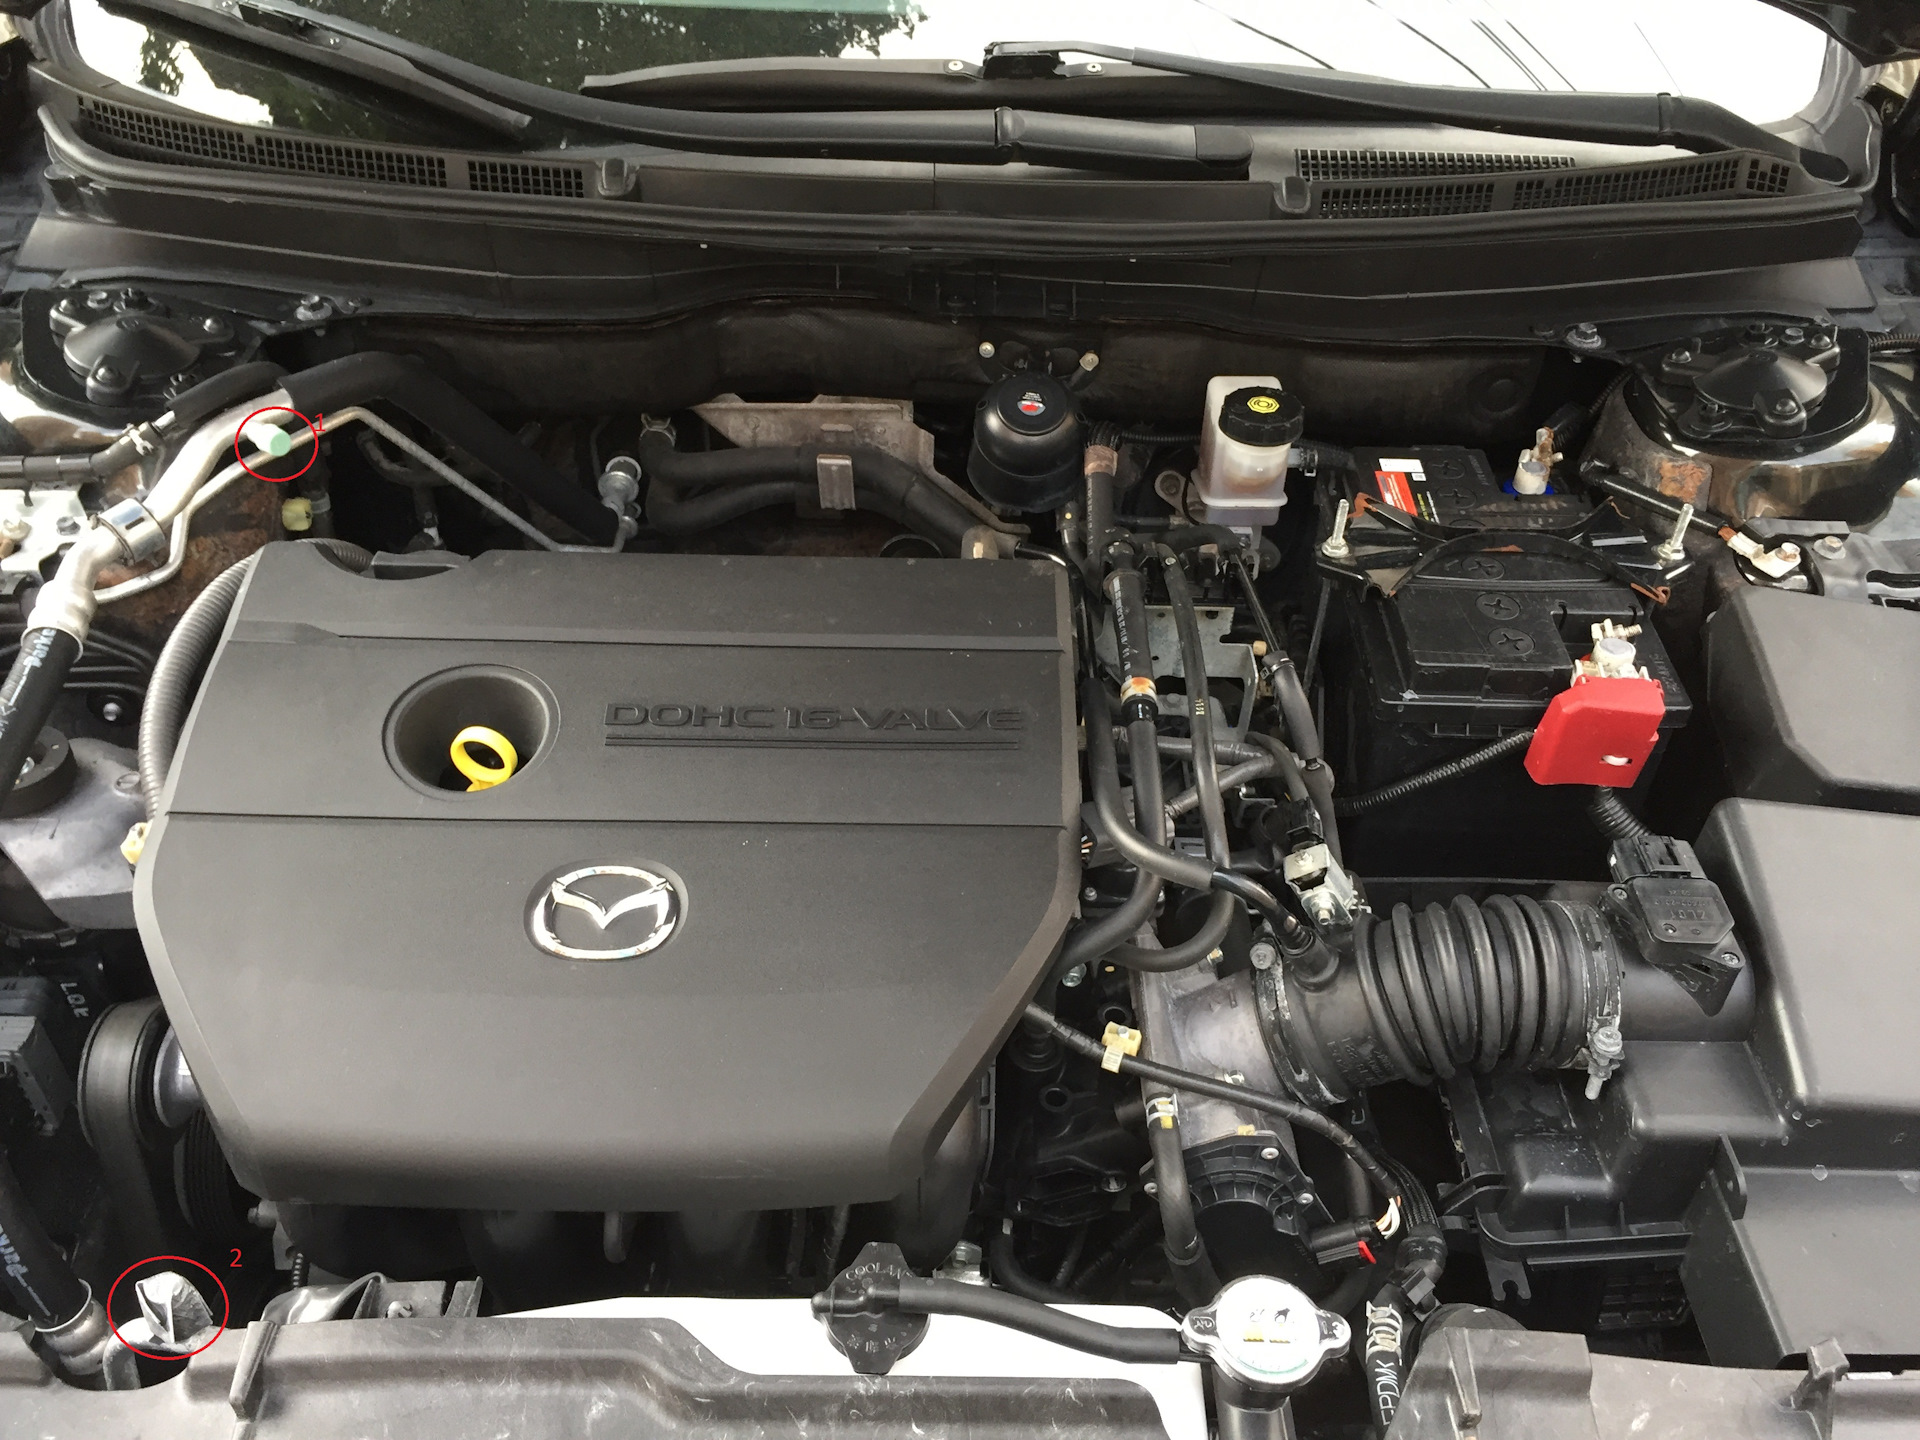 Мазда 6 gg 2.0 масло. Mazda 6 2008 мотор. Двигатель Мазда 6 2.0. Mazda 6 2008 1.8 мотор. Двигатель Мазда 6 GH 1.8.